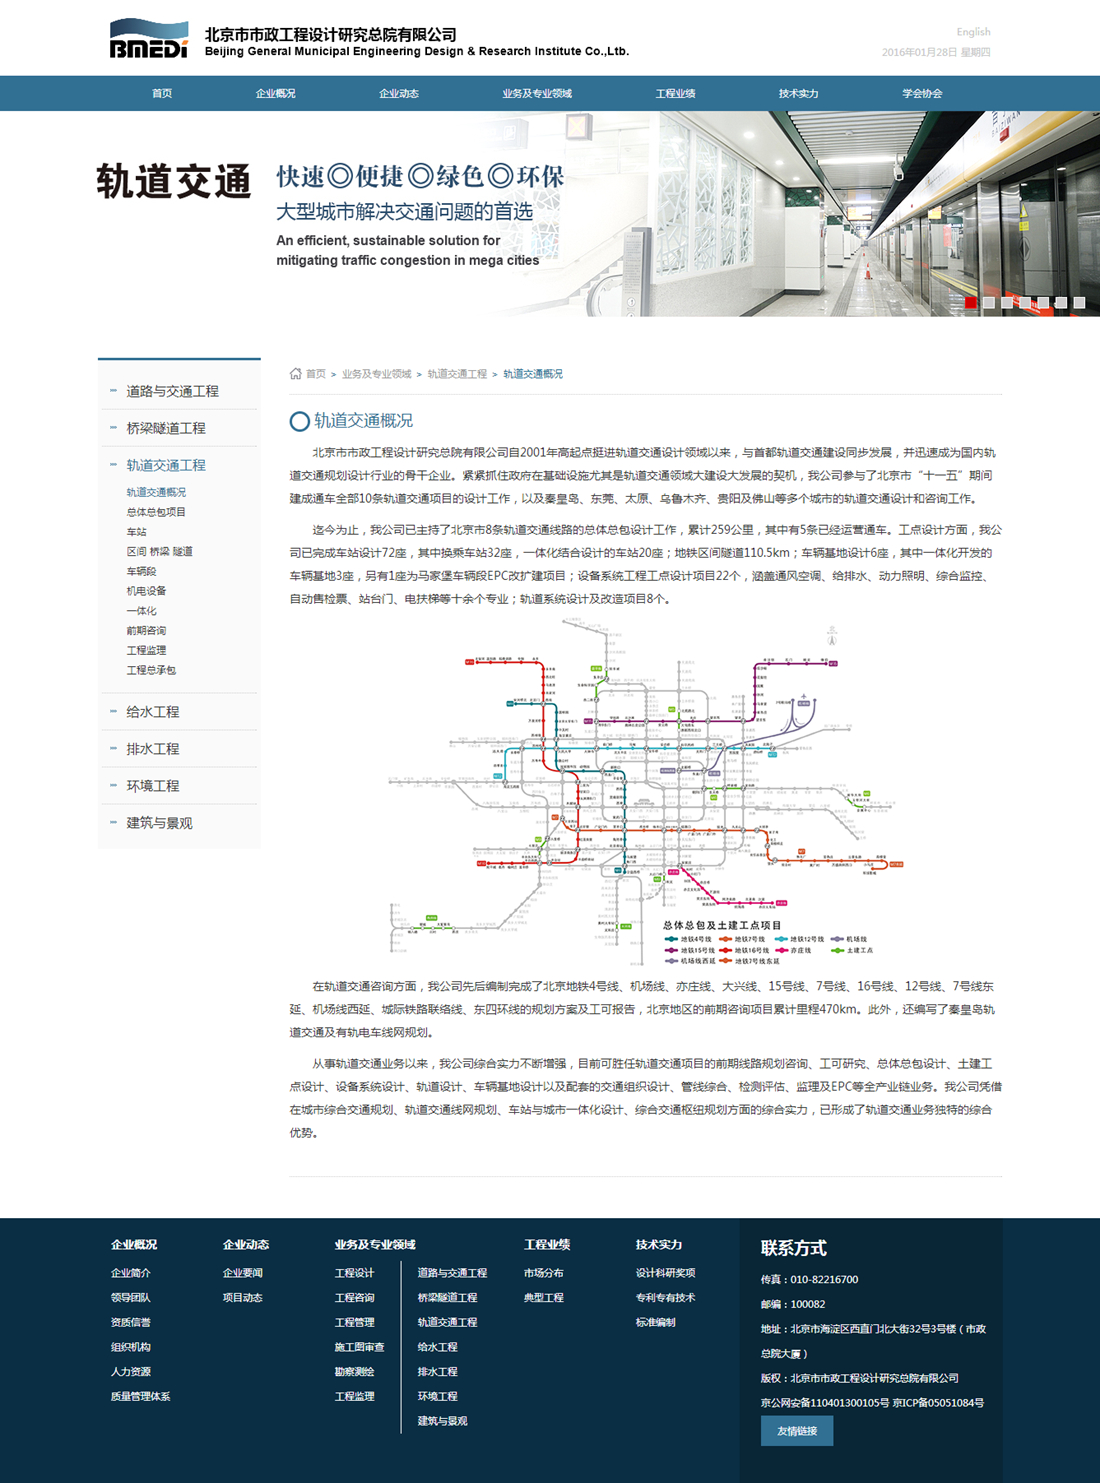 北京市市政工程设计研究总院-轨道交通